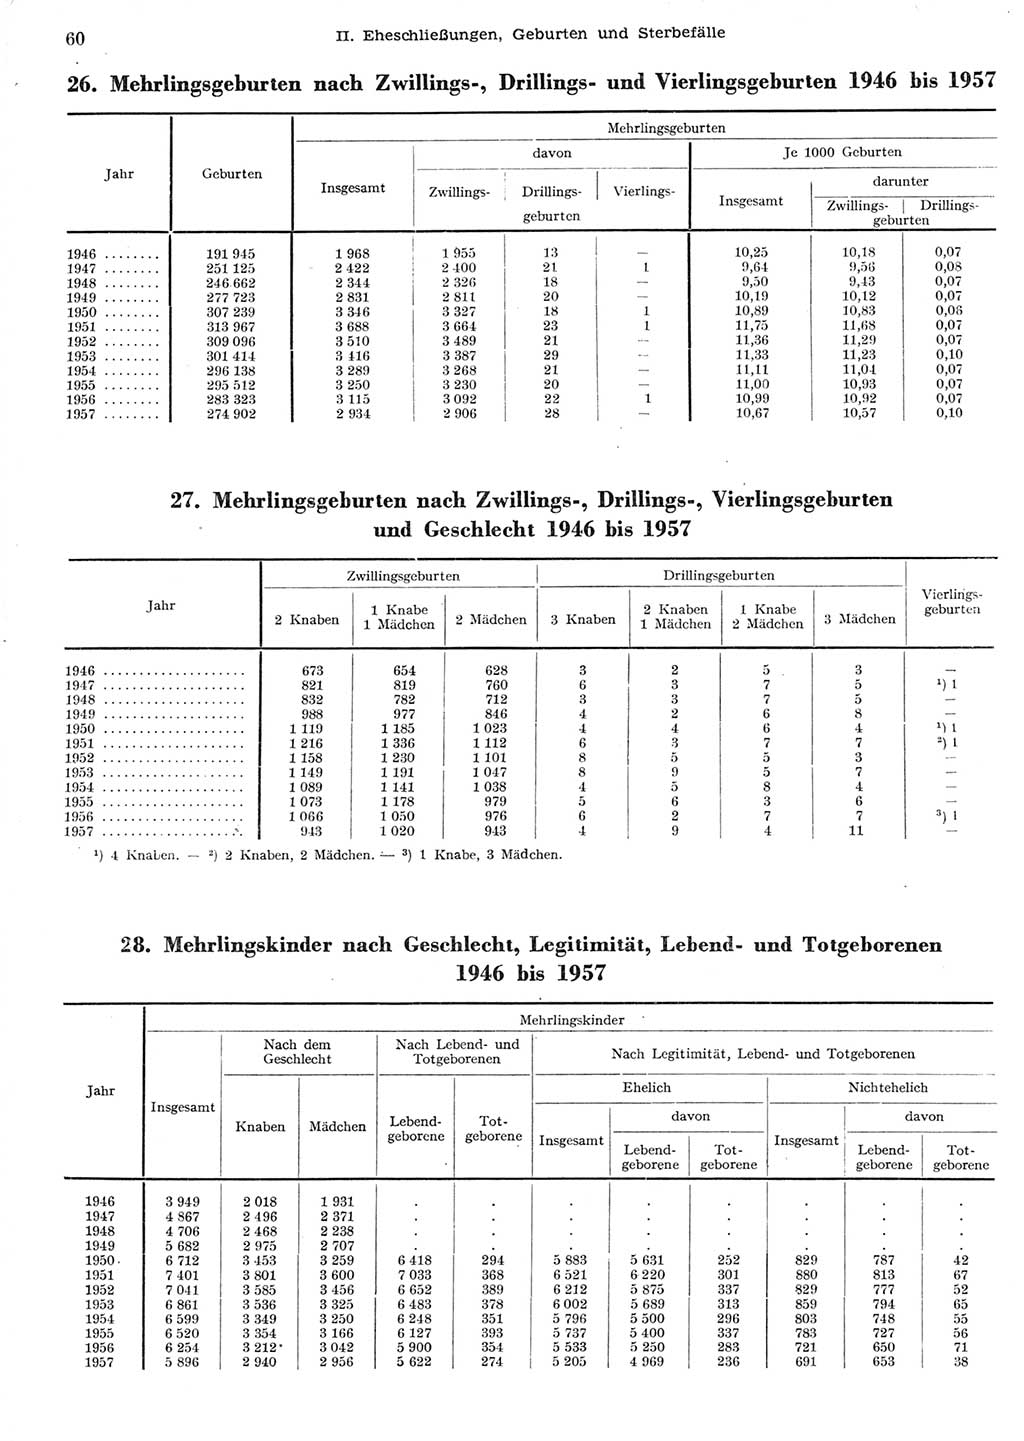 Statistisches Jahrbuch der Deutschen Demokratischen Republik (DDR) 1958, Seite 60 (Stat. Jb. DDR 1958, S. 60)